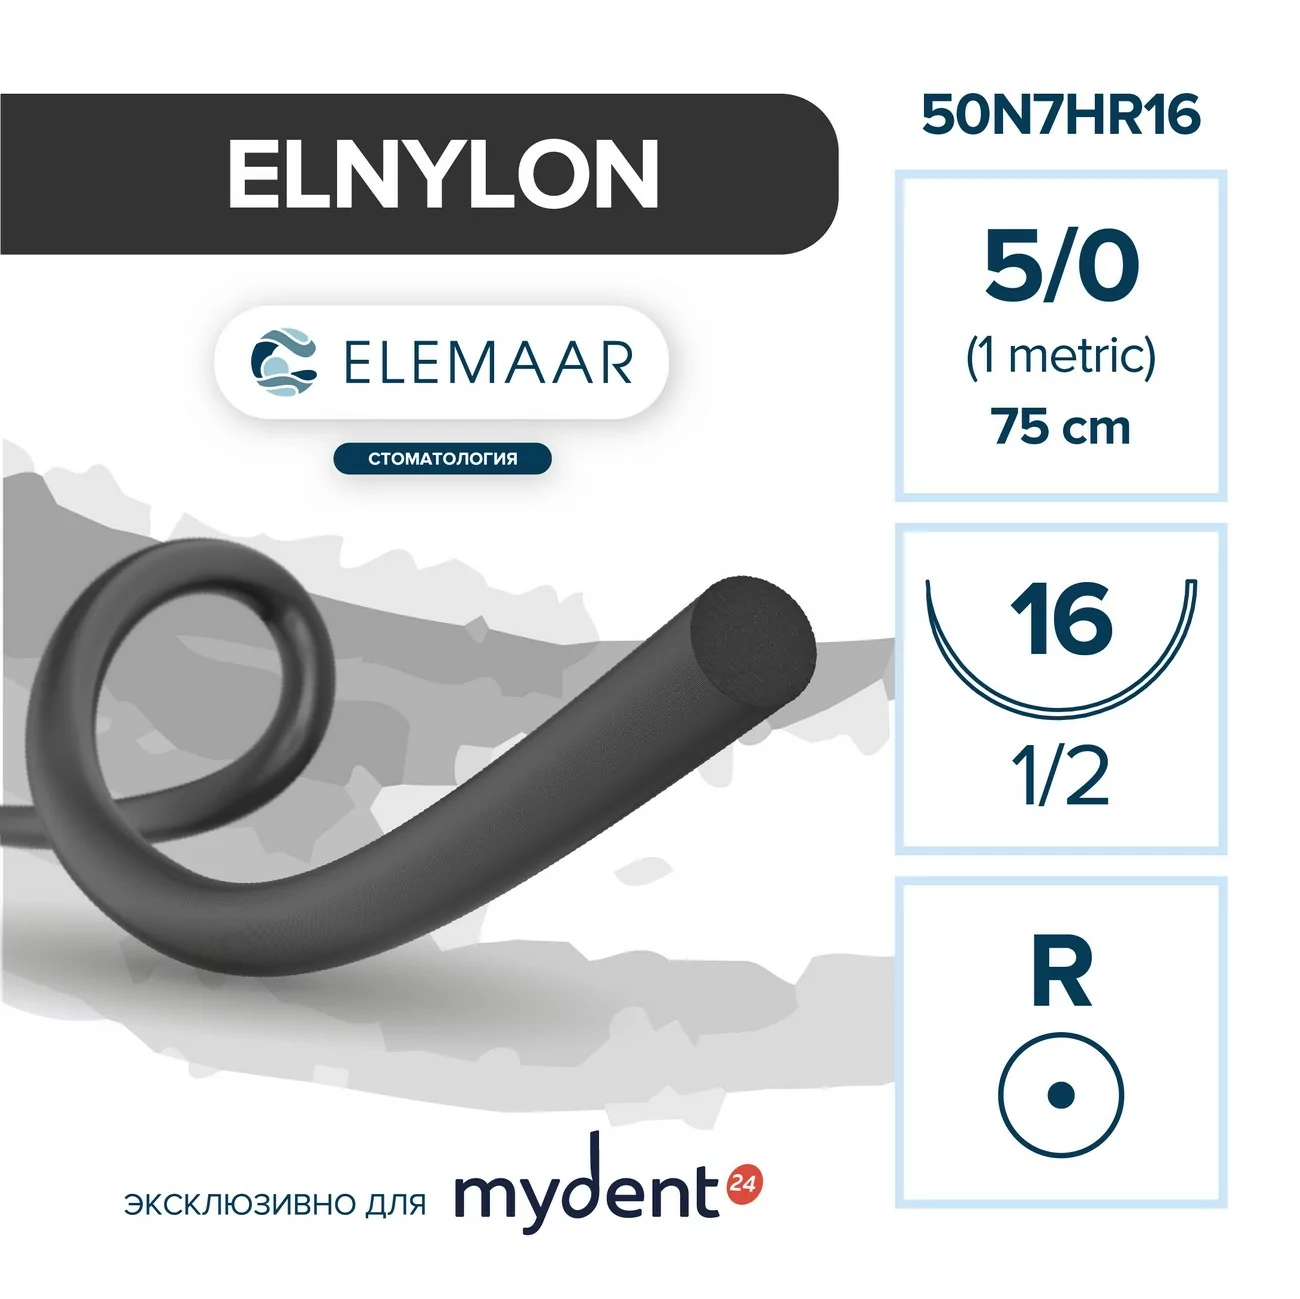 Шовный материал ELNYLON 5/0 (12 шт, 75 см, 1/2, 16 мм, колющая)